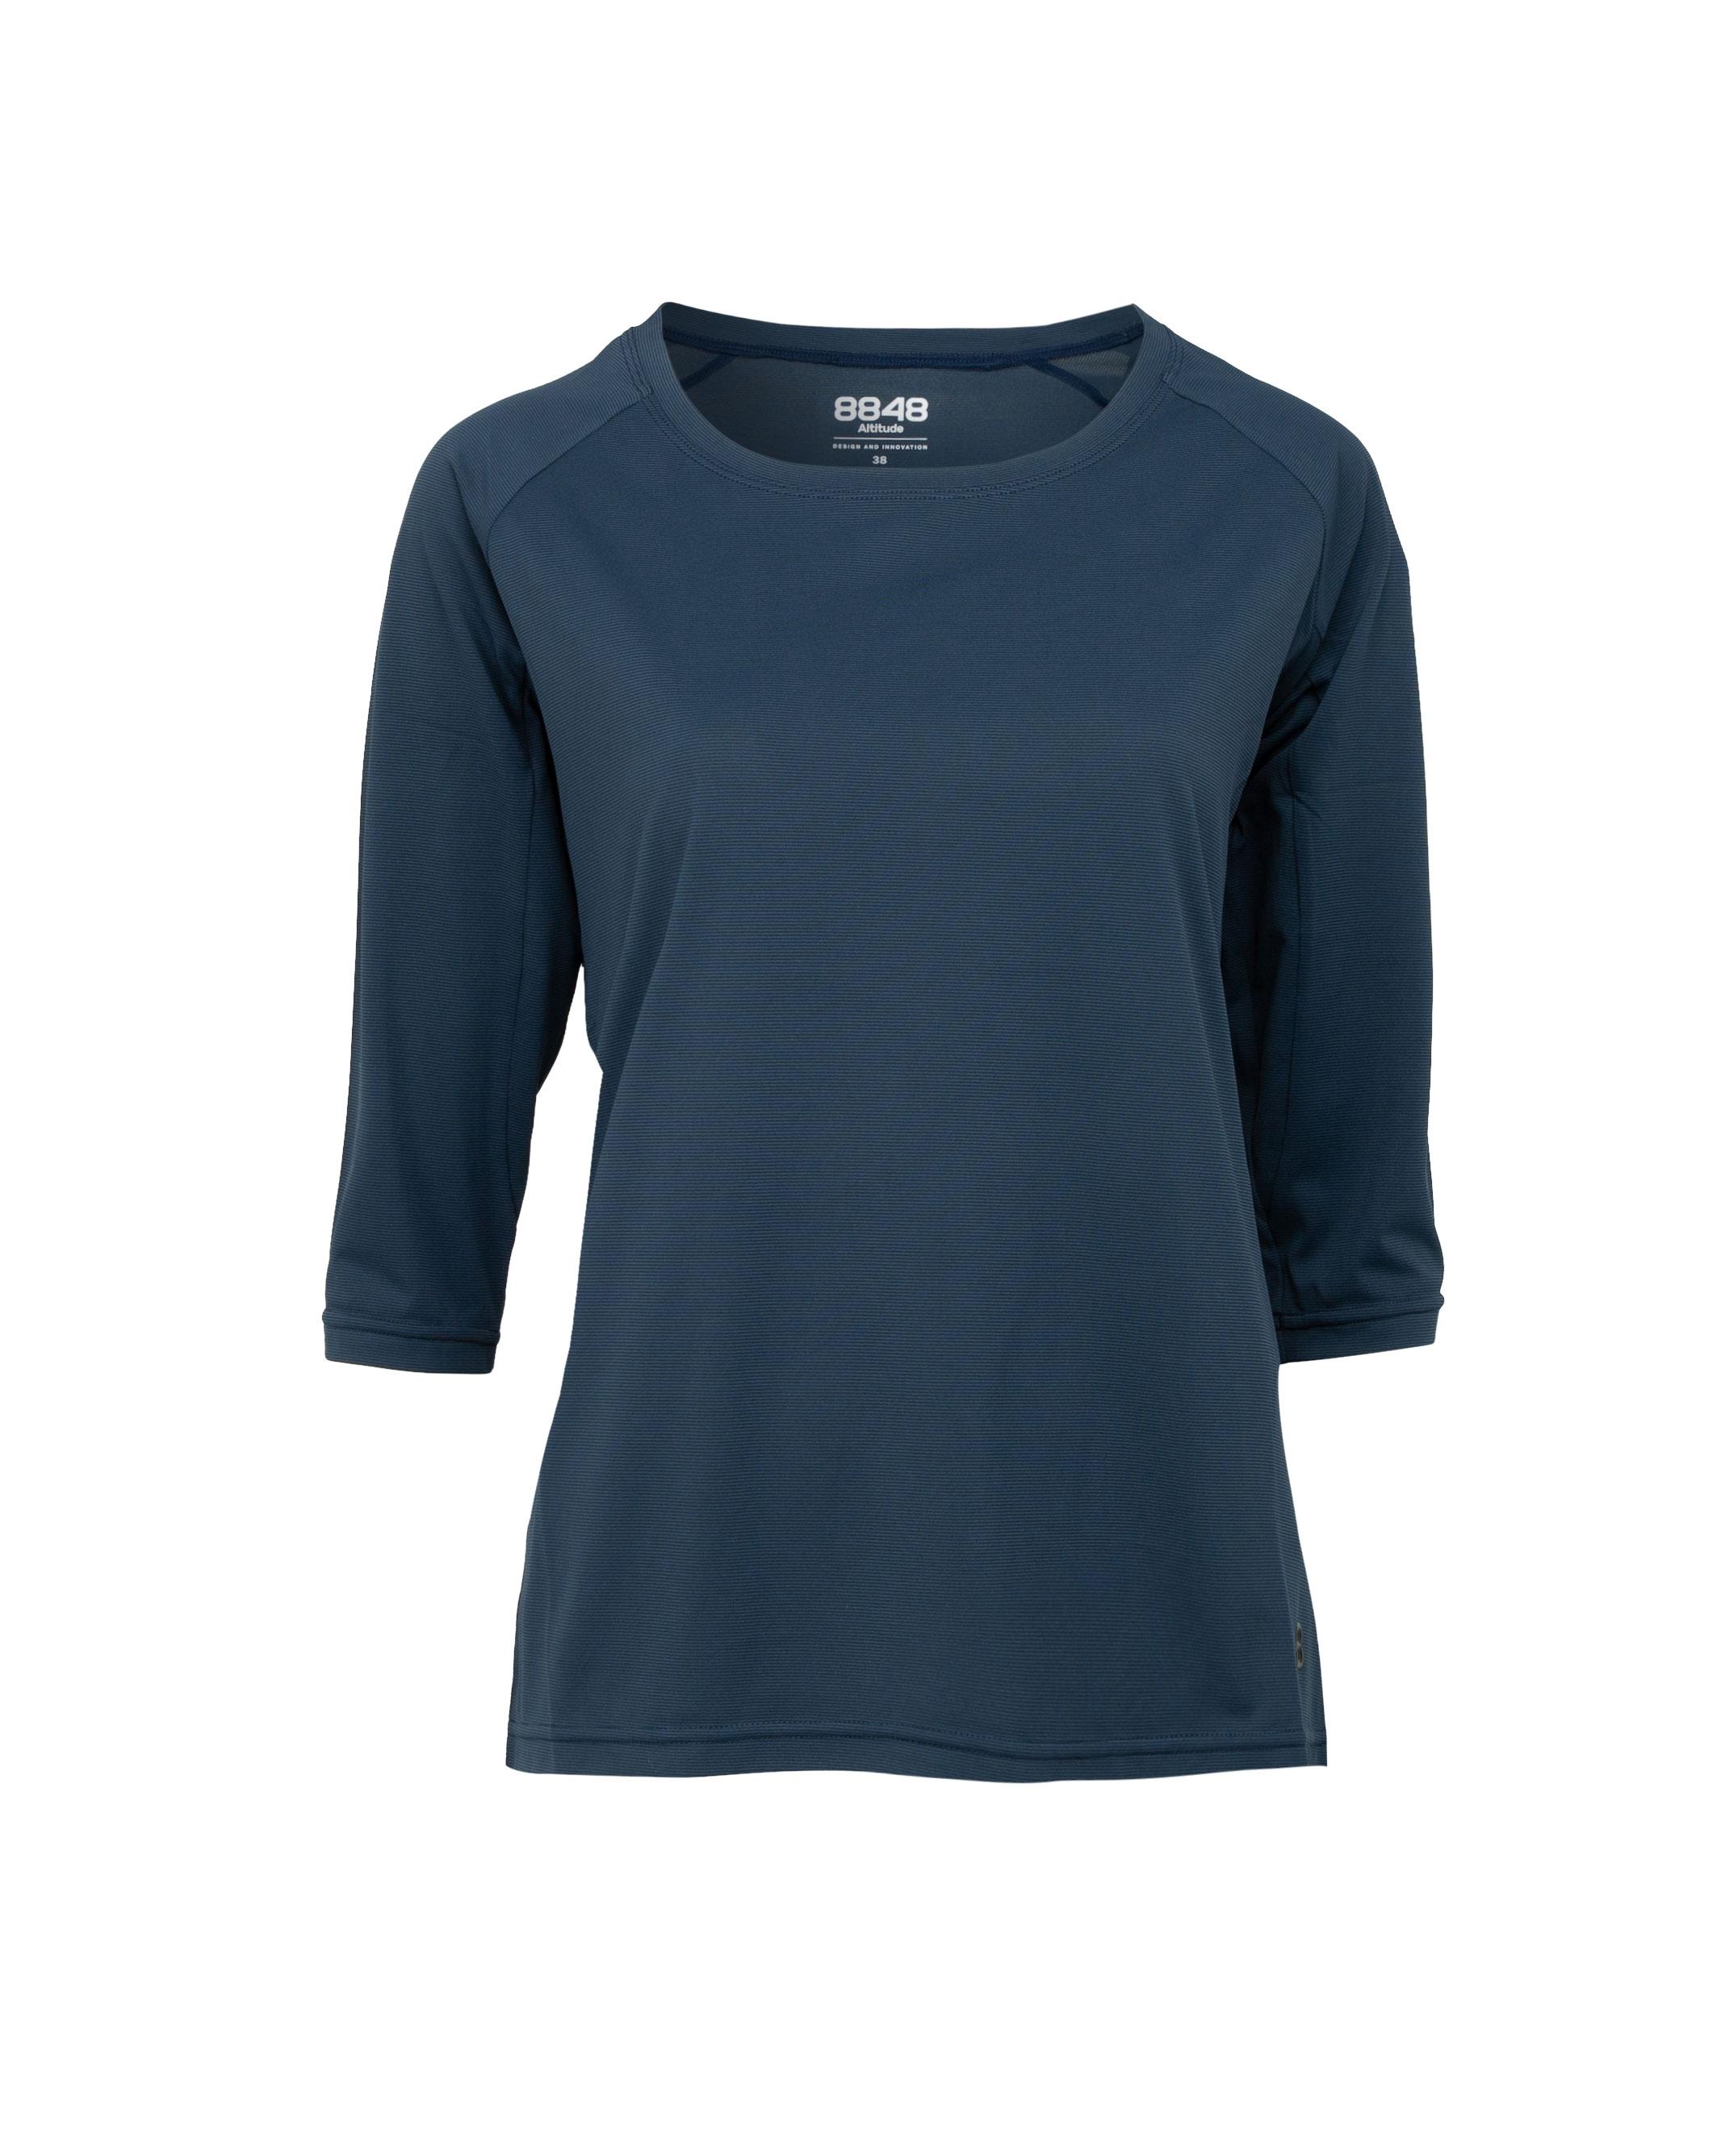 Dandilon W Tee Navy - Dunkelblaues längeres T-Shirt Damen